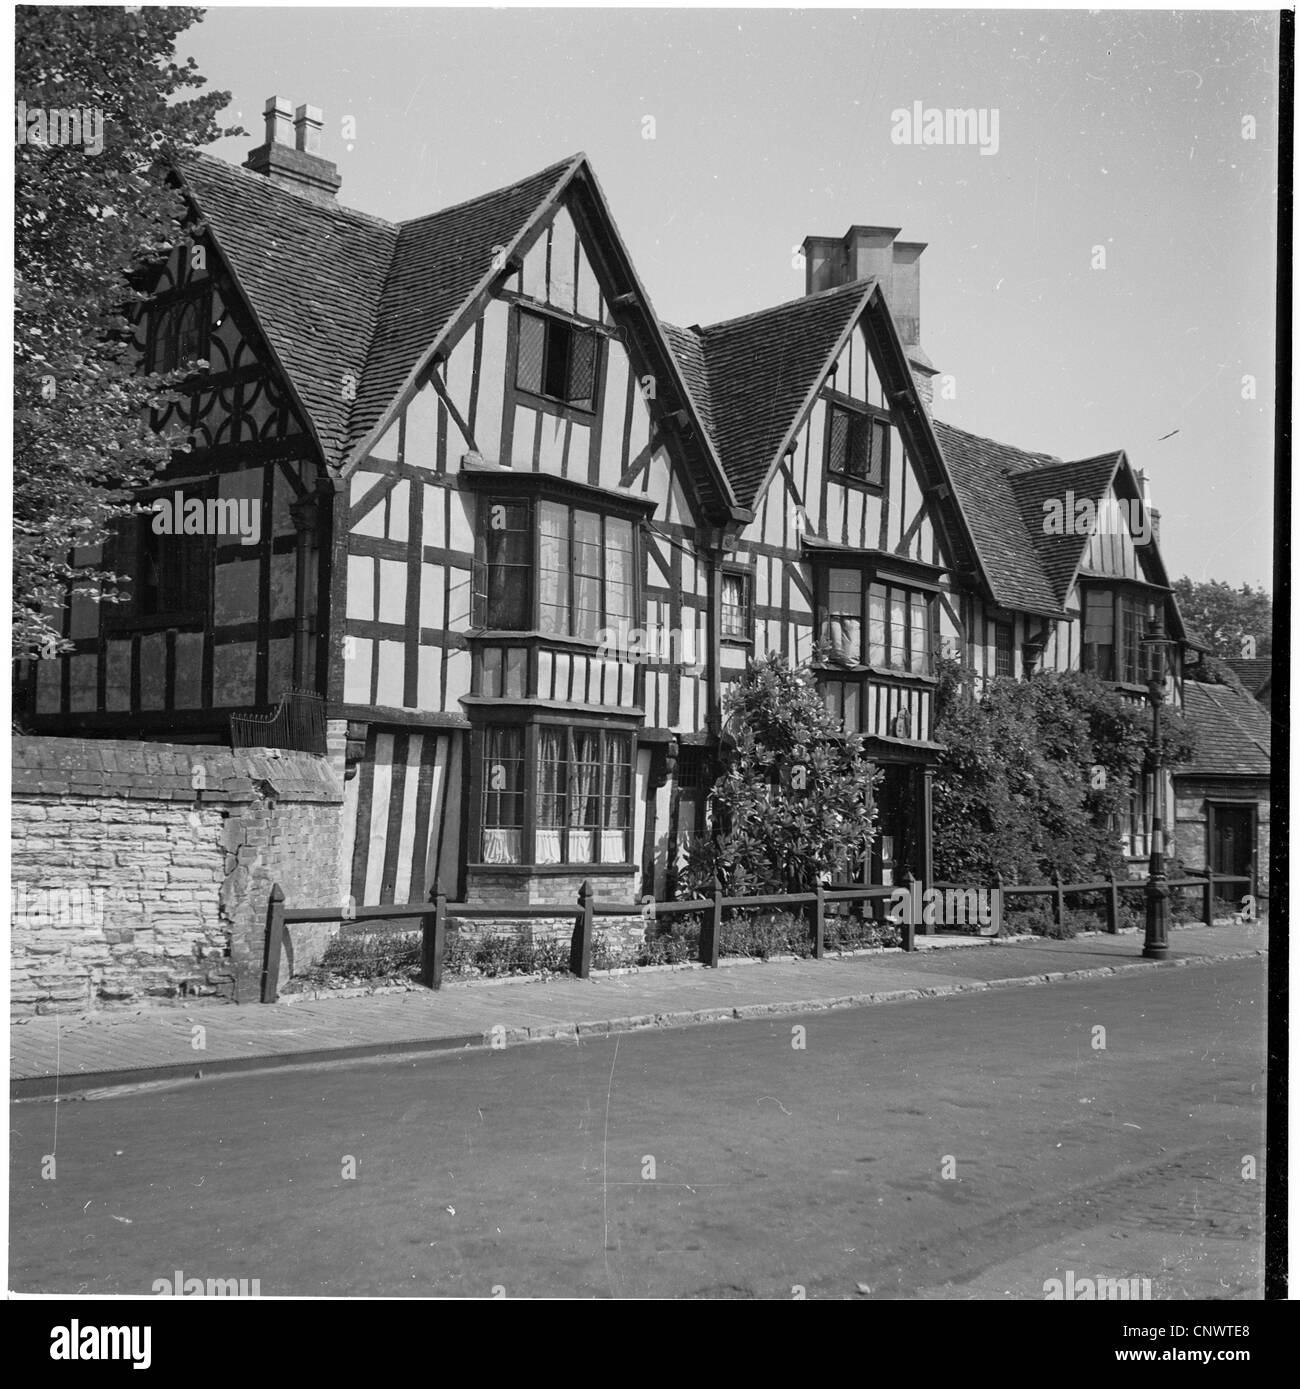 Historische Abbildung der 1950er Jahre Haus in Wilmcote, wo Mary Arden lebte, Mutter William Shakespeare. Stockfoto